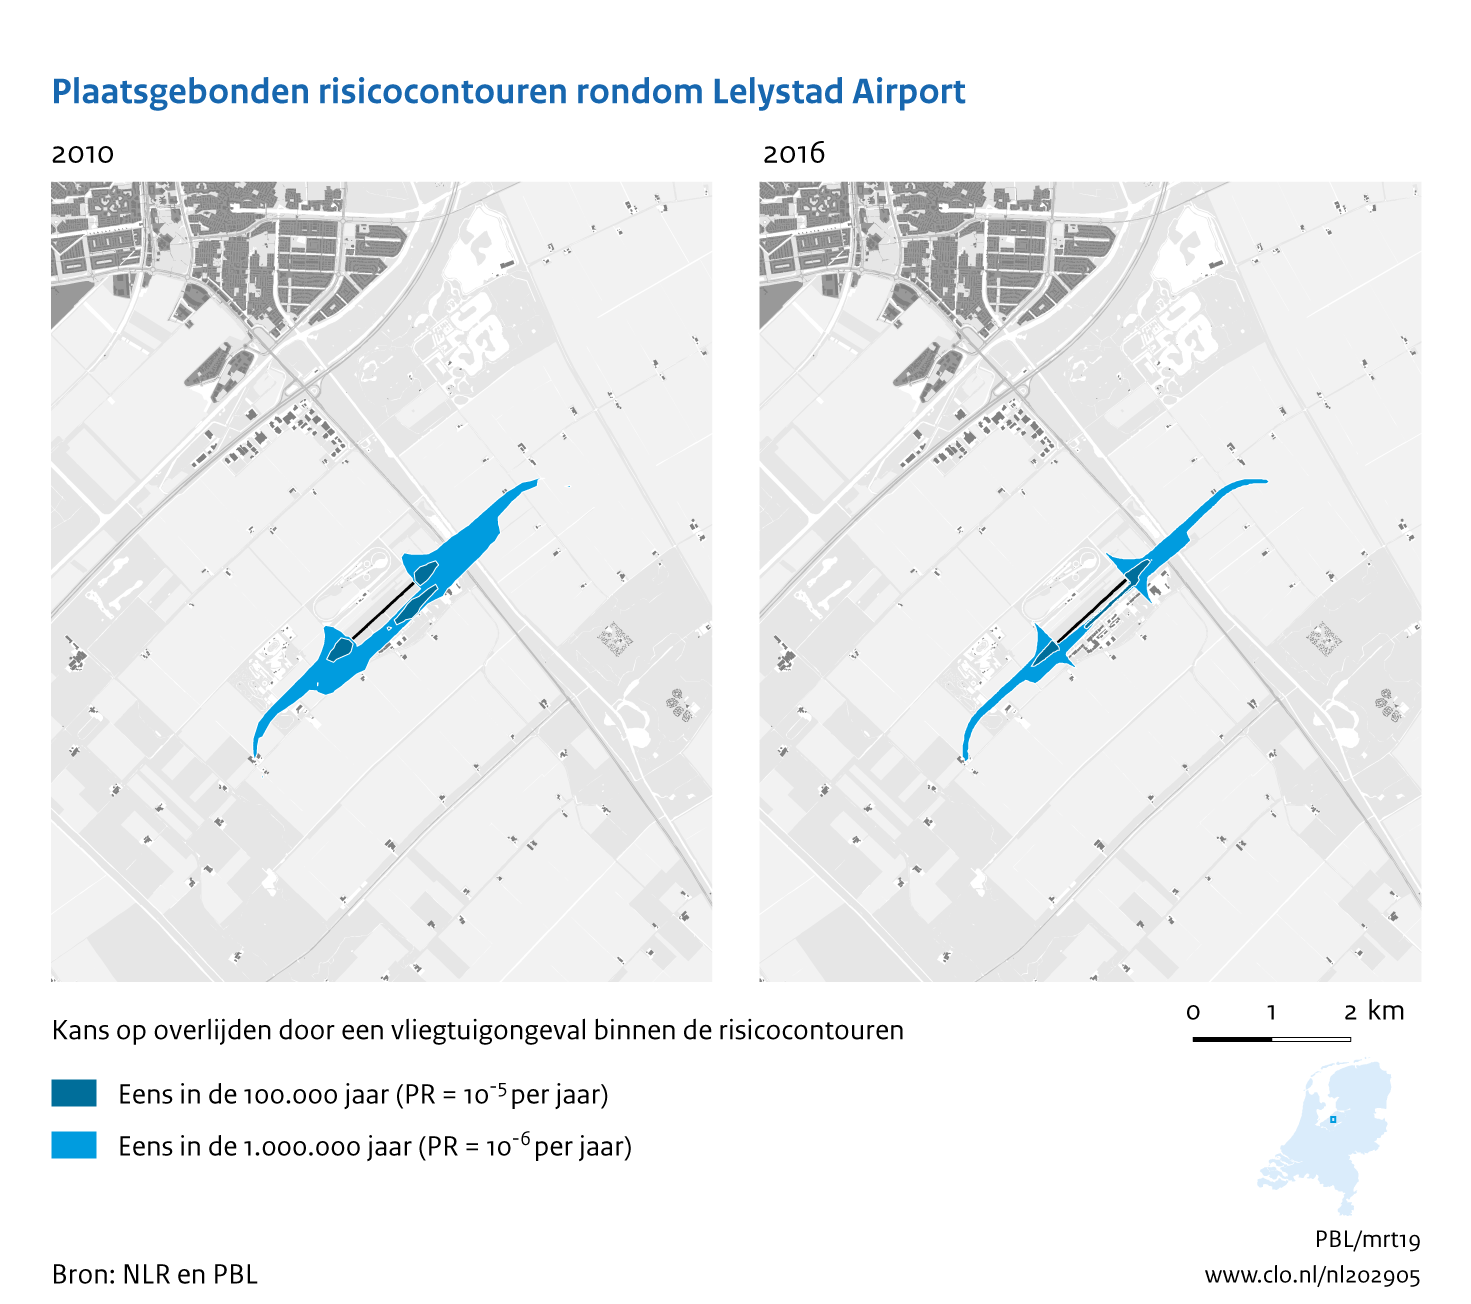 Figuur Plaatsgebonden risicocontouren rondom Lelystad Airport, 2010-2016. In de rest van de tekst wordt deze figuur uitgebreider uitgelegd.